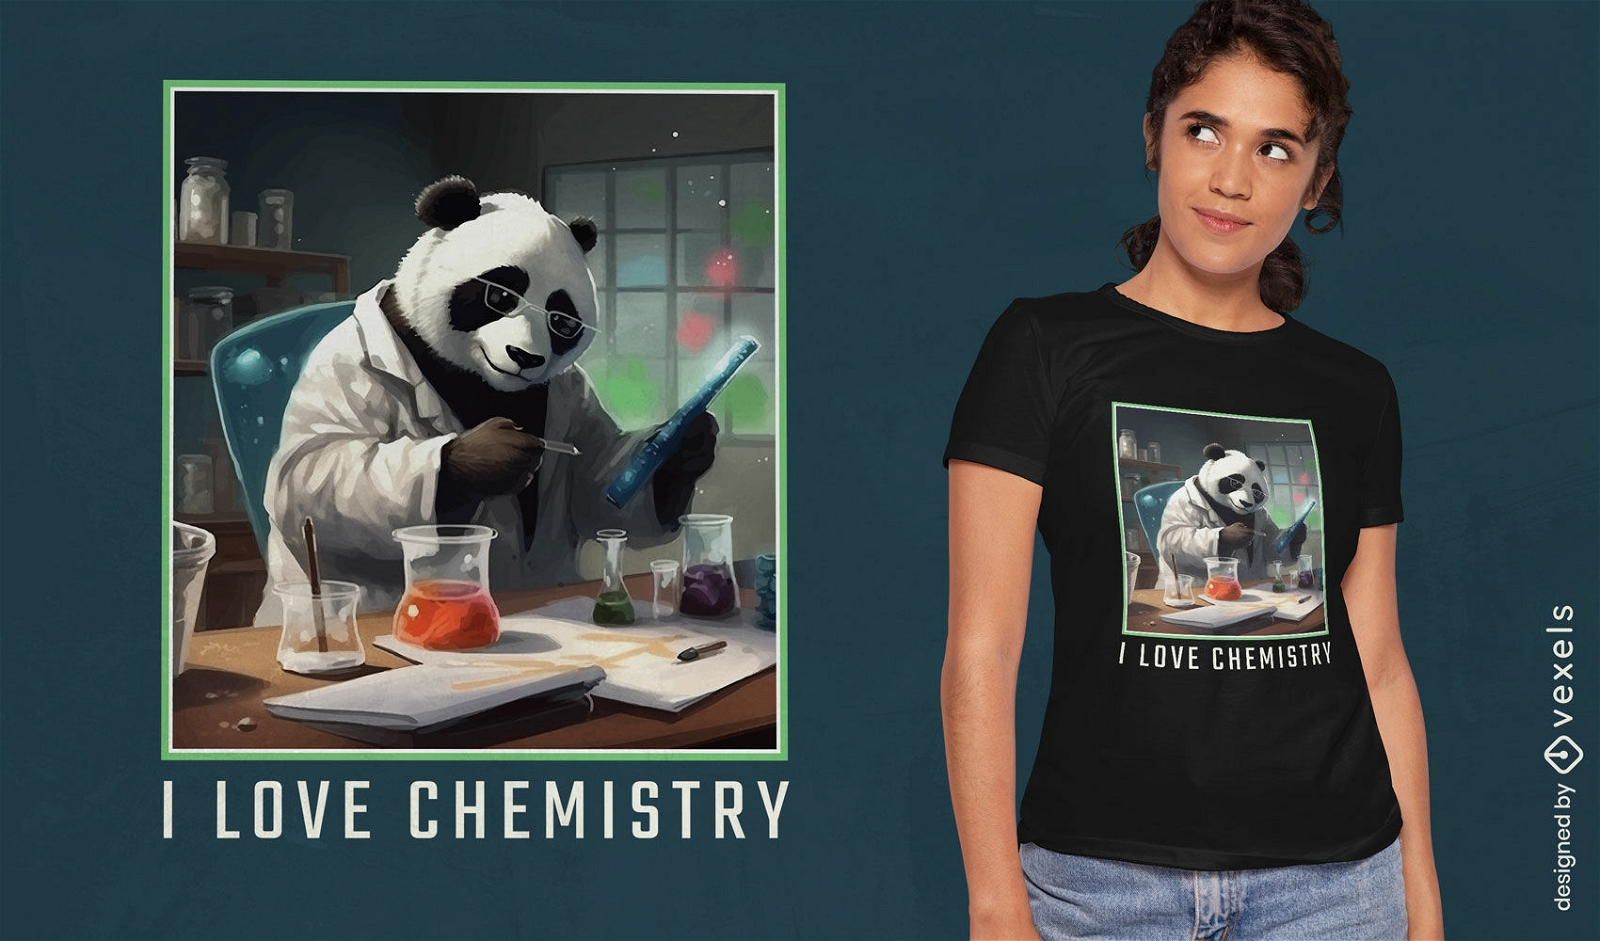 Pandab?r-Wissenschaftler-T-Shirt-Design